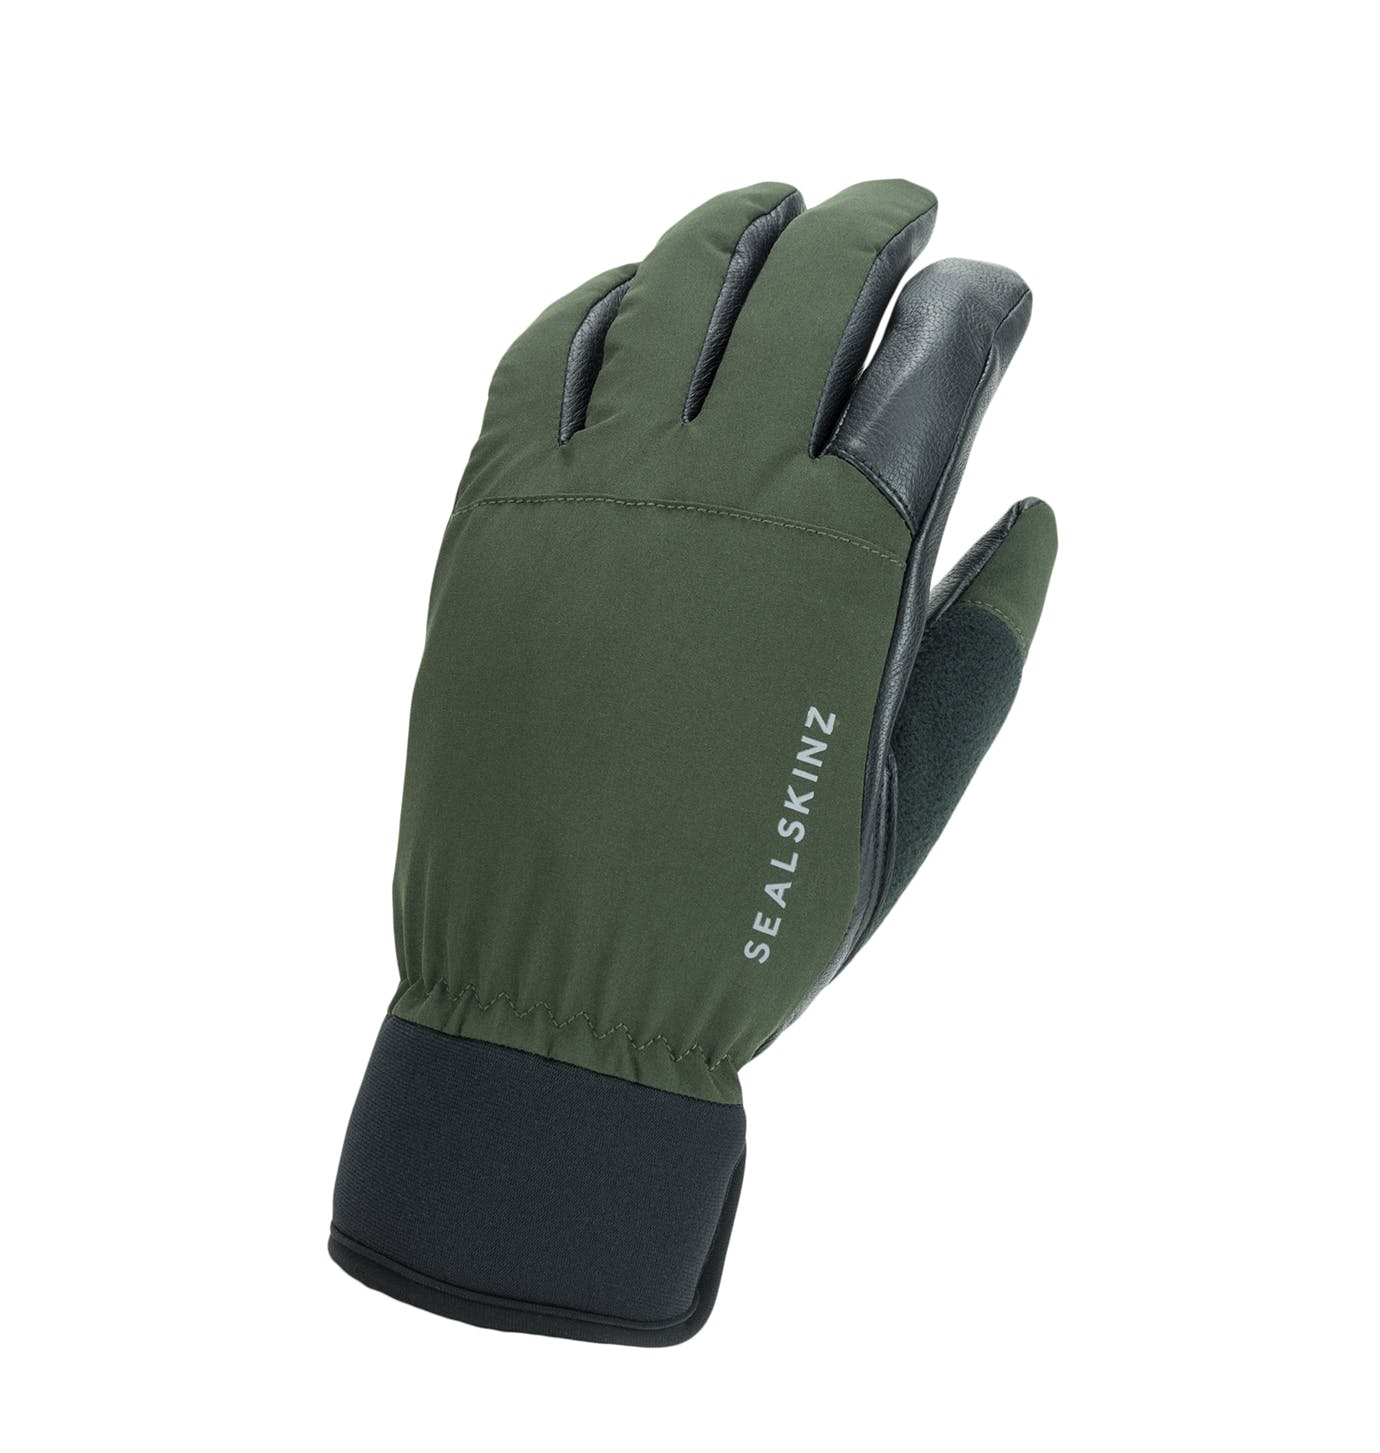 Generic As Waterproof Fishing Gloves Winter Fall Full Fing @ Best